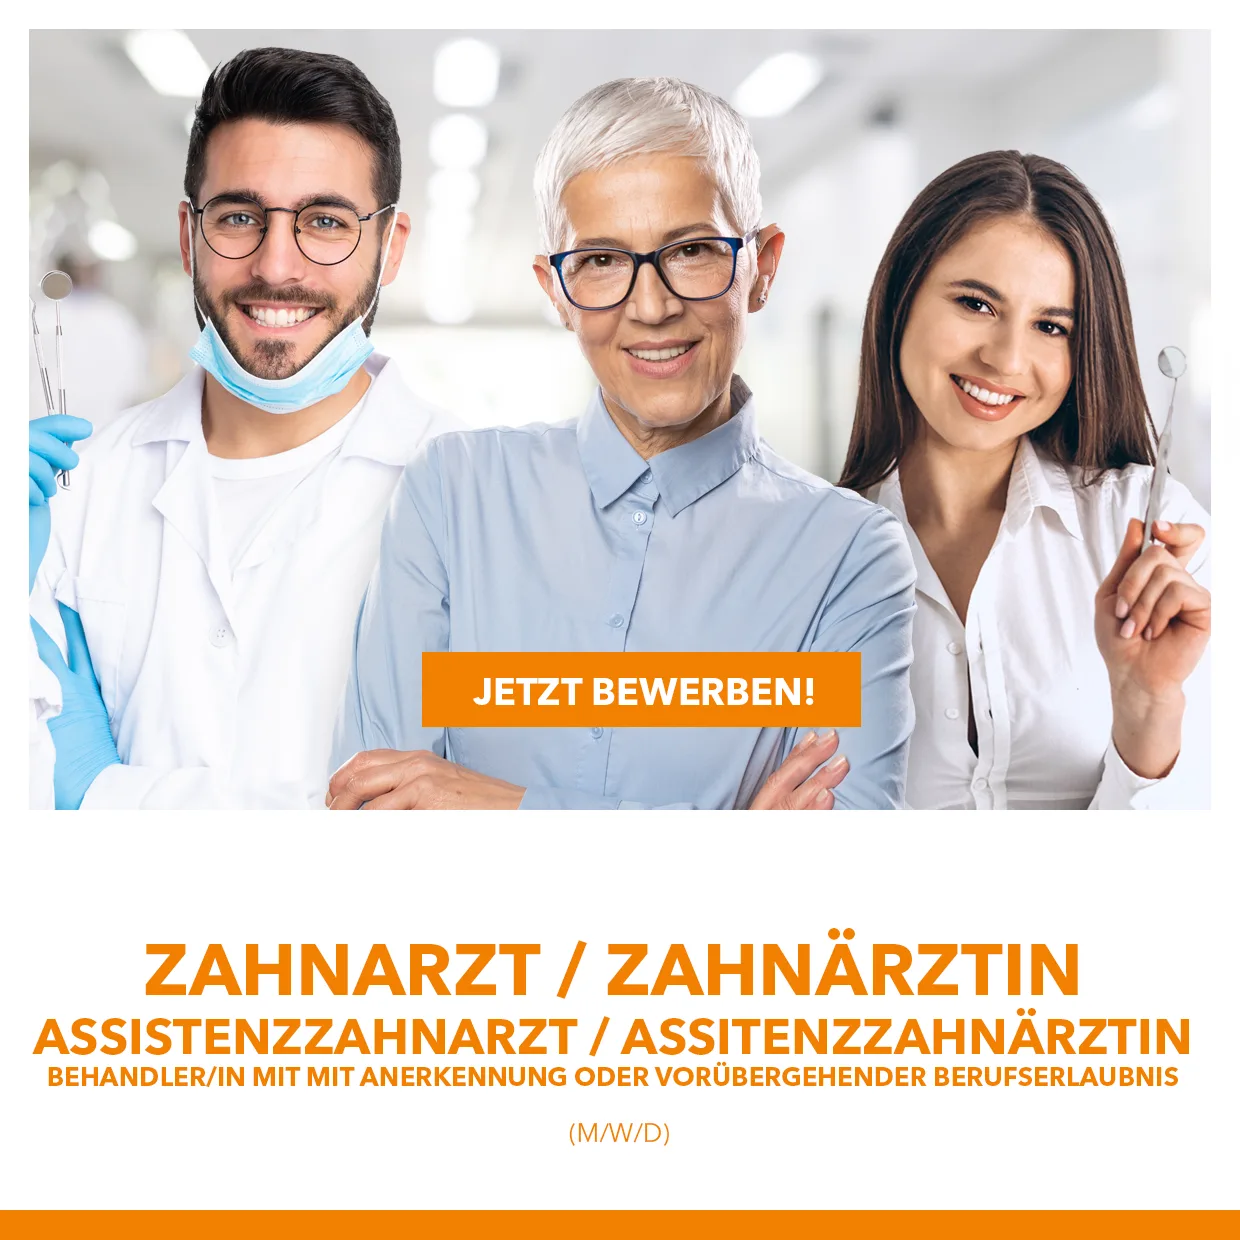 Zahnarzt Zahnärztin Assistenzzahnarzt Assistenzzahnärztin Behandler/in mit Anerkennung oder vorübergehender Berufserlaubnis